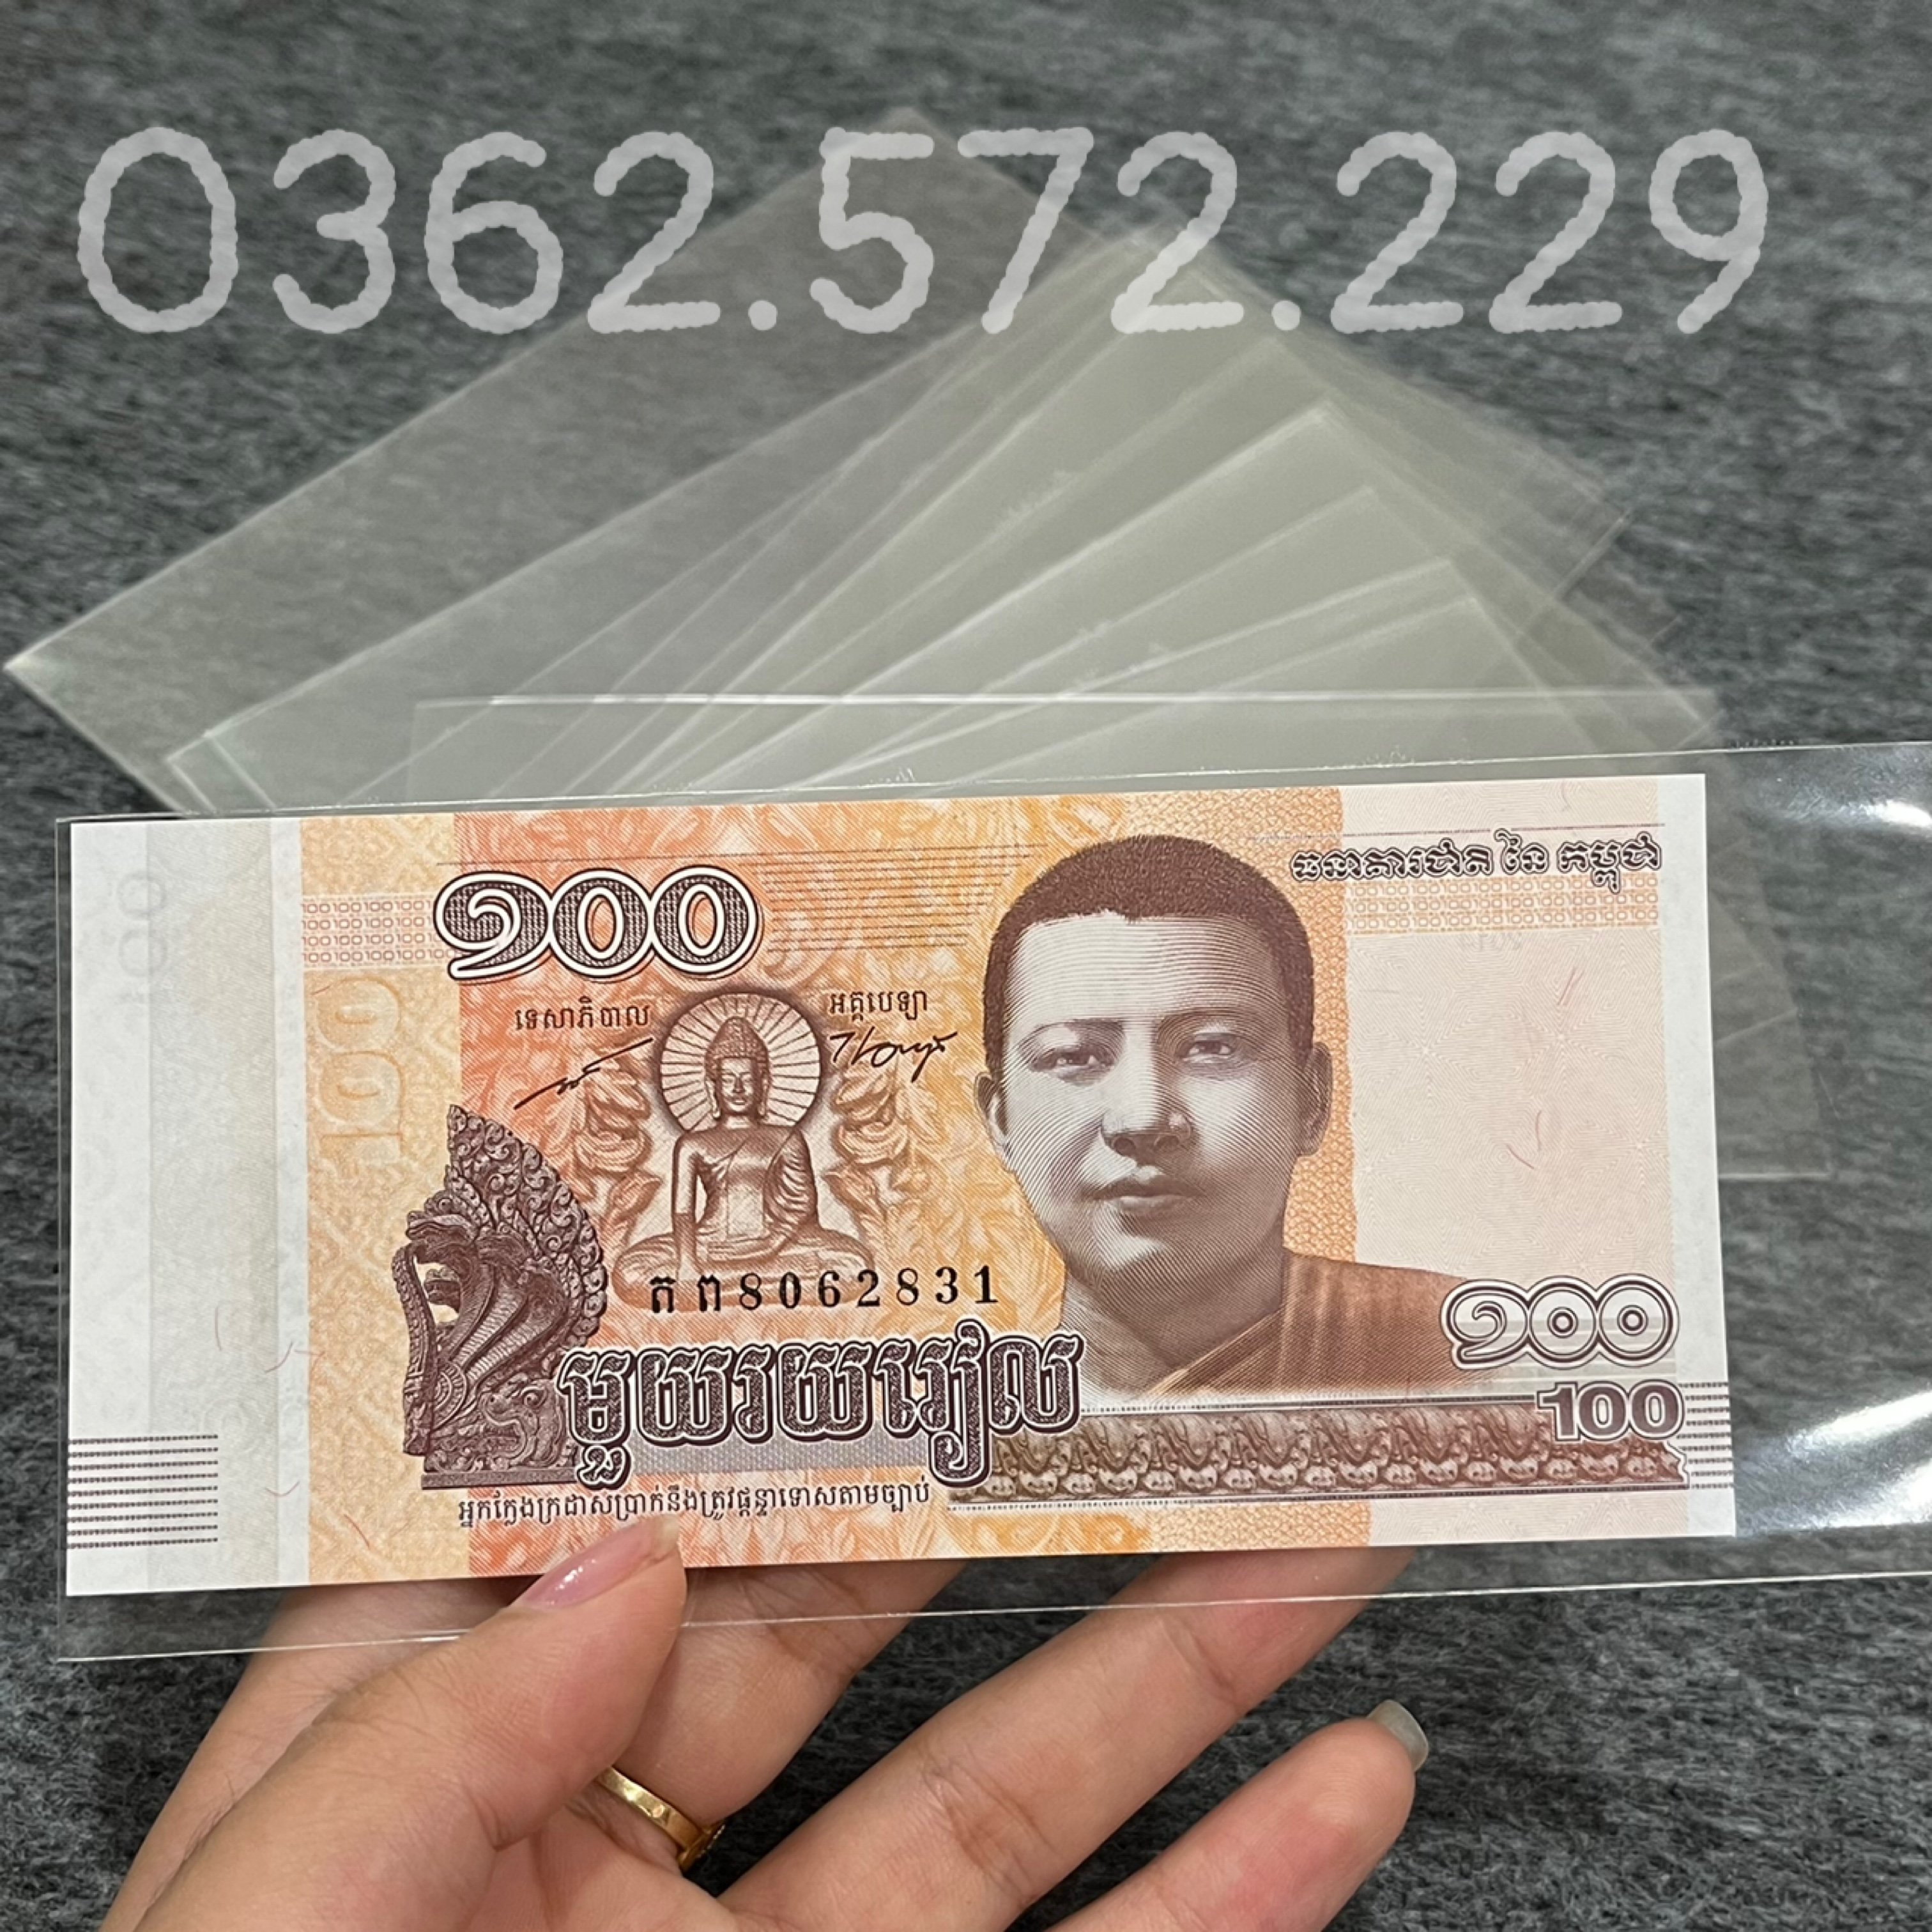 Phơi nilong bảo quản tiền giấy nhiều kích cỡ khác nhau .Mỗi túi phơi 50 lá phơi